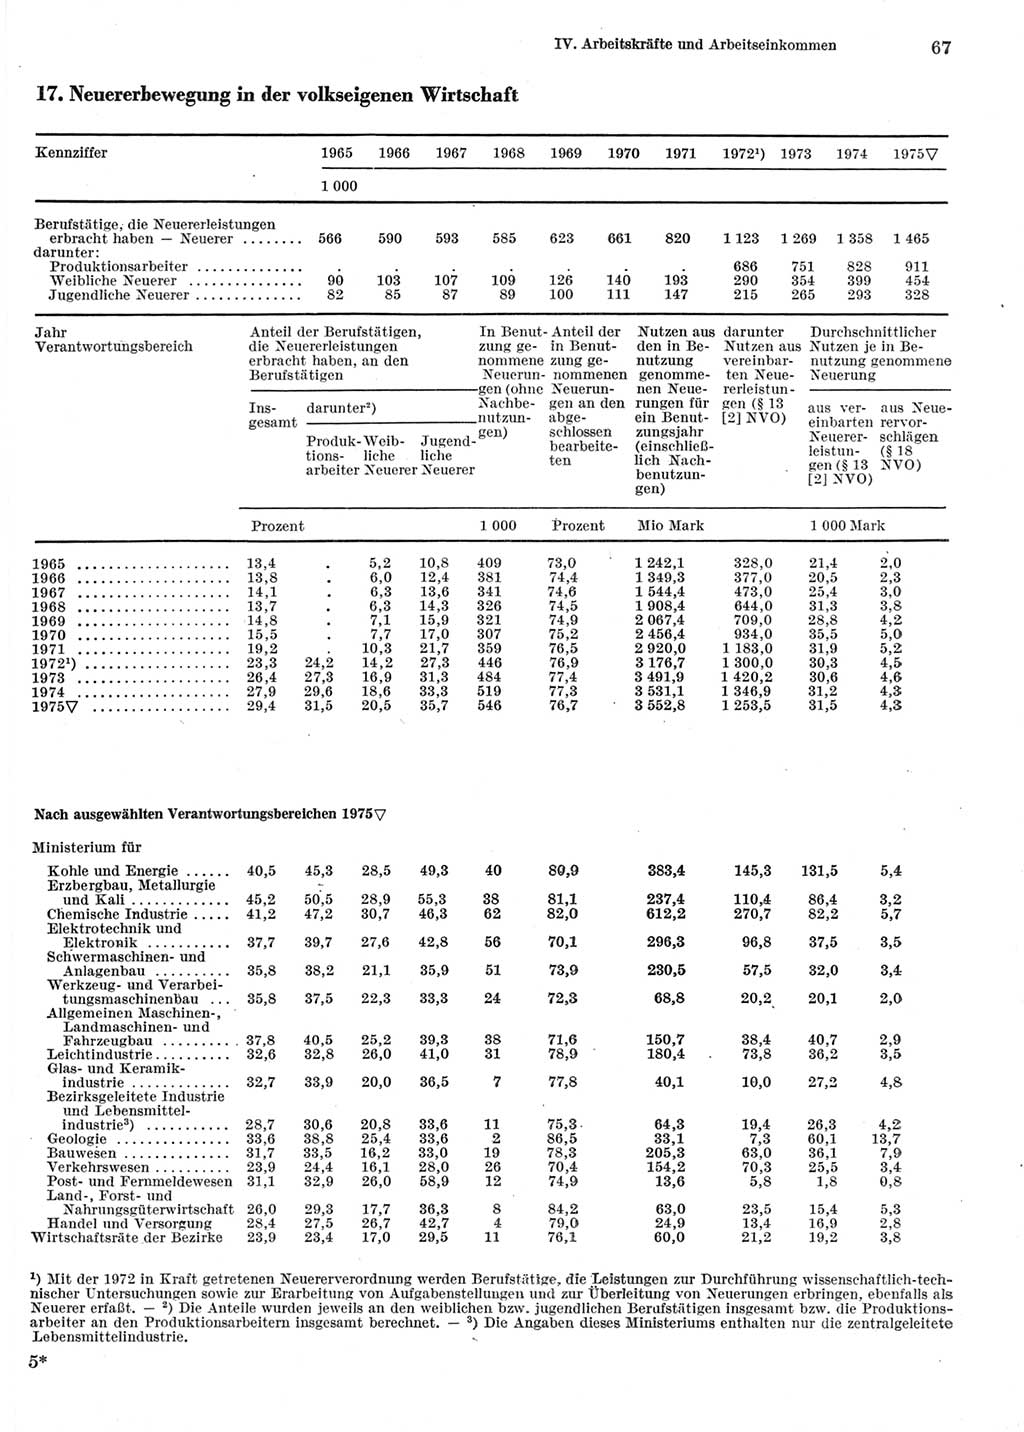 Statistisches Jahrbuch der Deutschen Demokratischen Republik (DDR) 1976, Seite 67 (Stat. Jb. DDR 1976, S. 67)